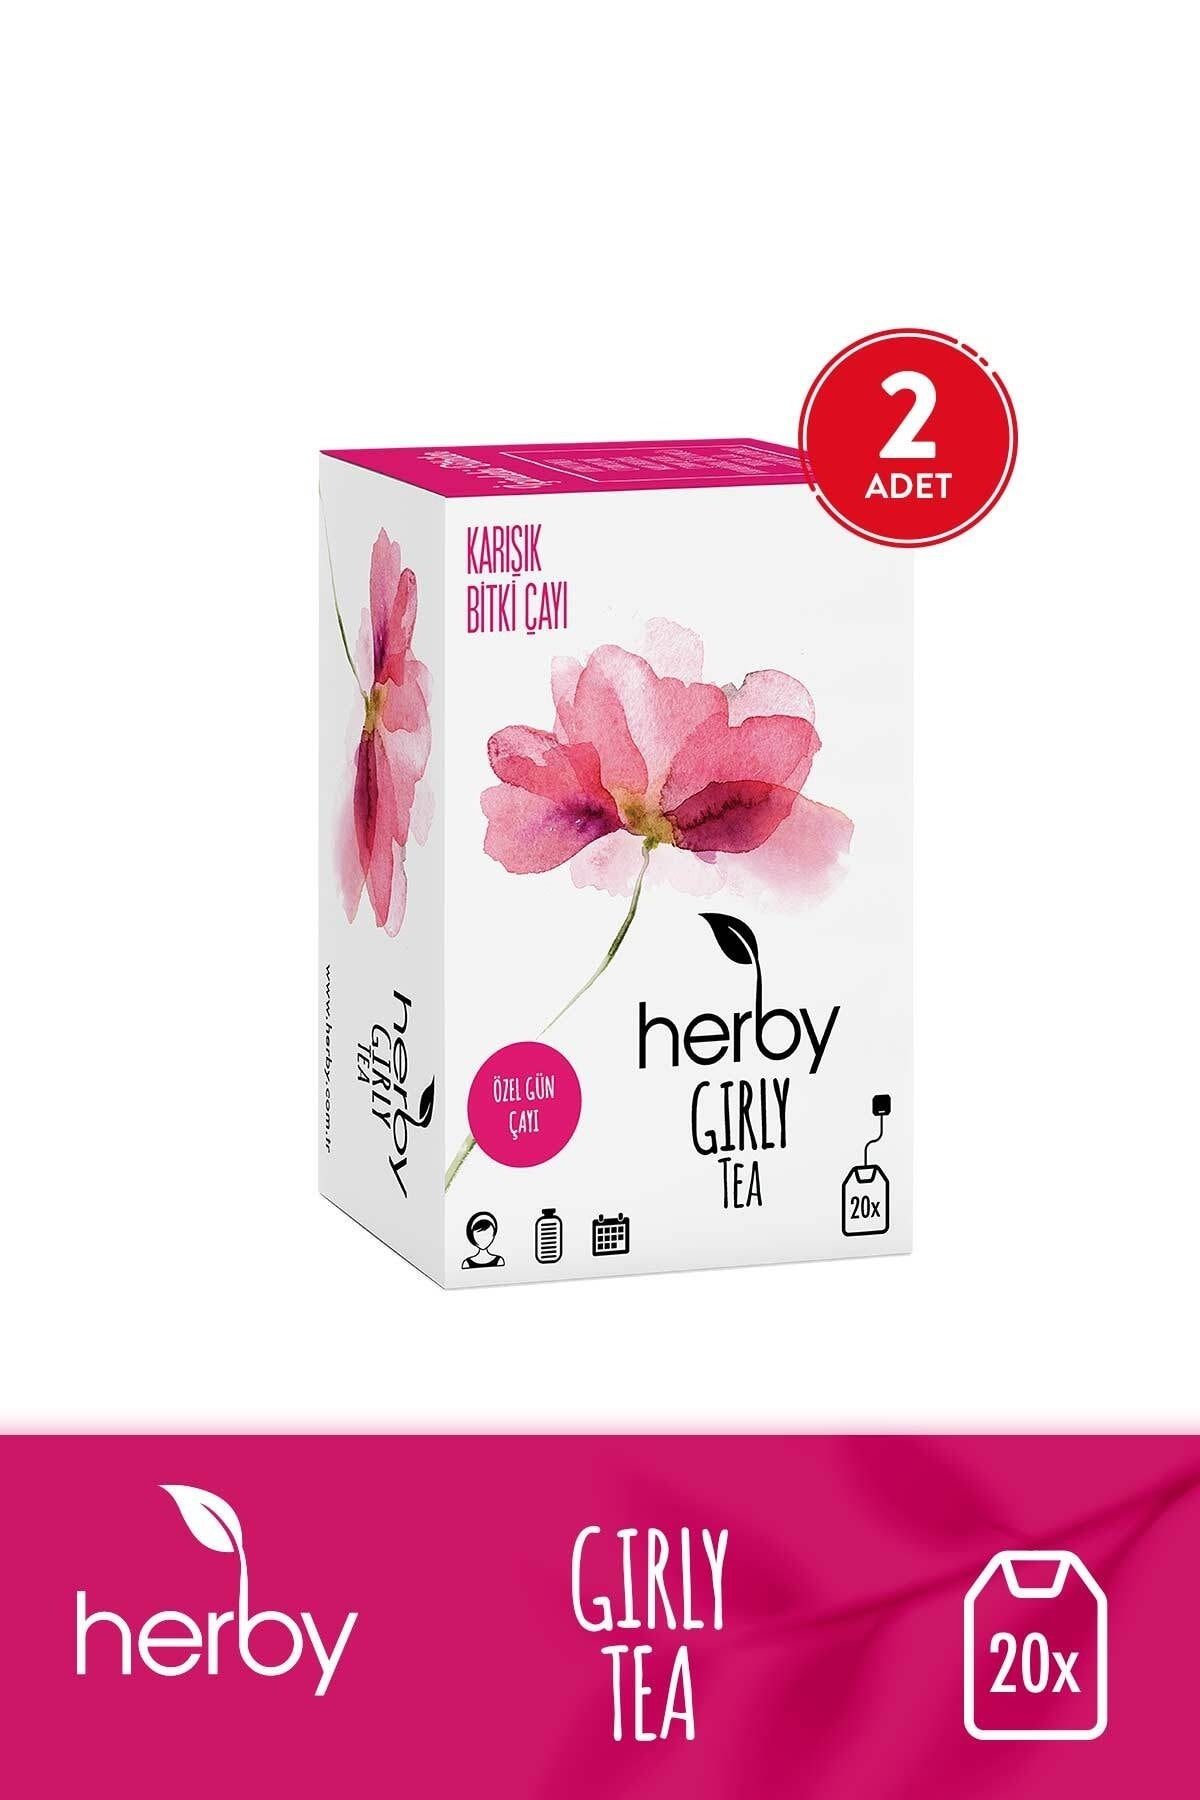 Herby Girly Tea Regl Dönemine Özel Rahatlatıcı Bitki Çayı 2'li Paket